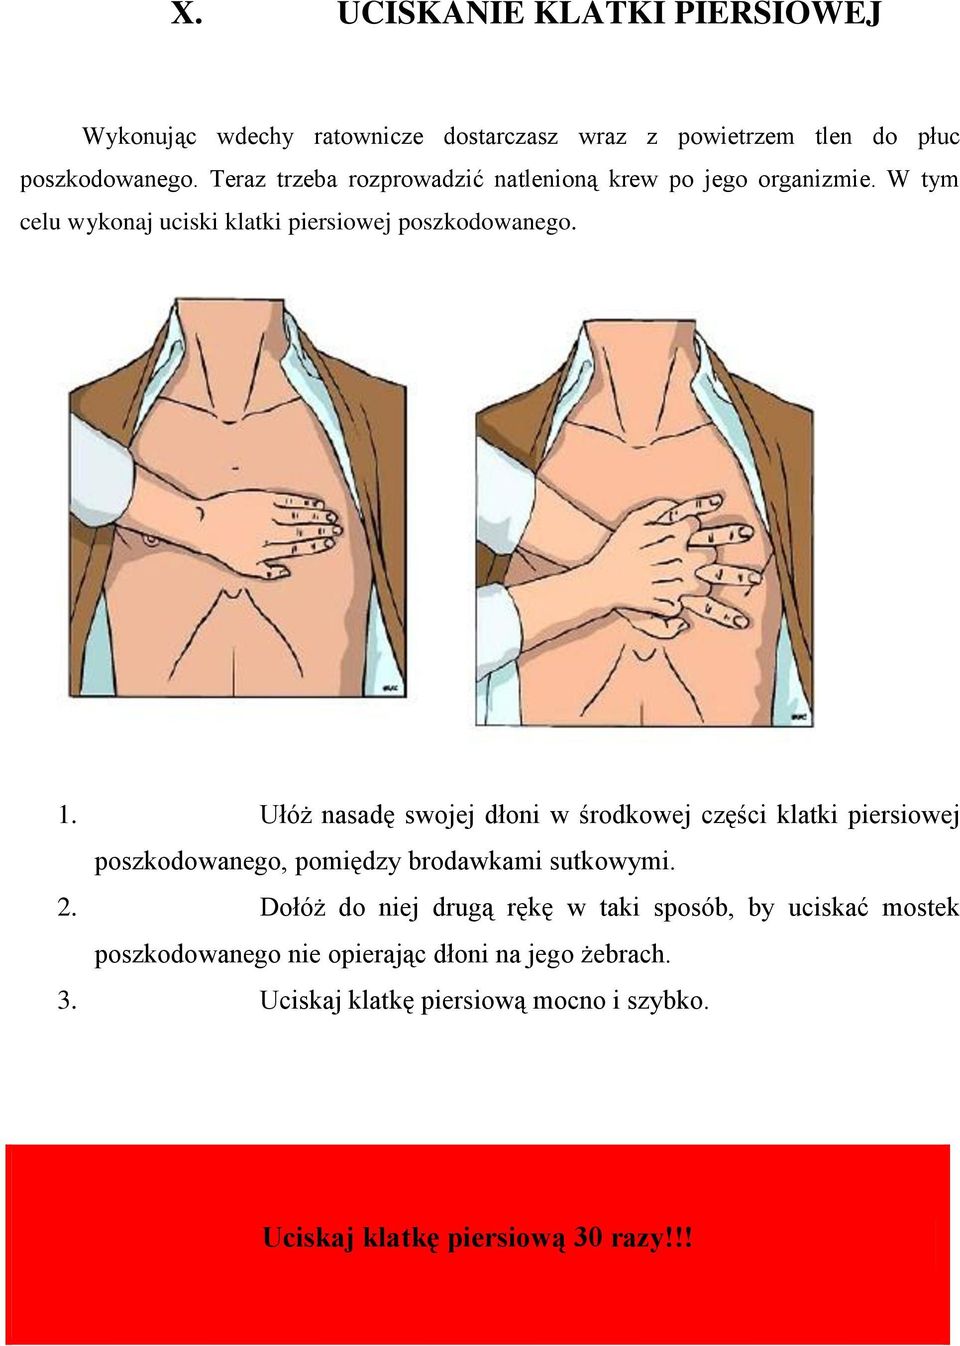 Ułóż nasadę swojej dłoni w środkowej części klatki piersiowej poszkodowanego, pomiędzy brodawkami sutkowymi. 2.